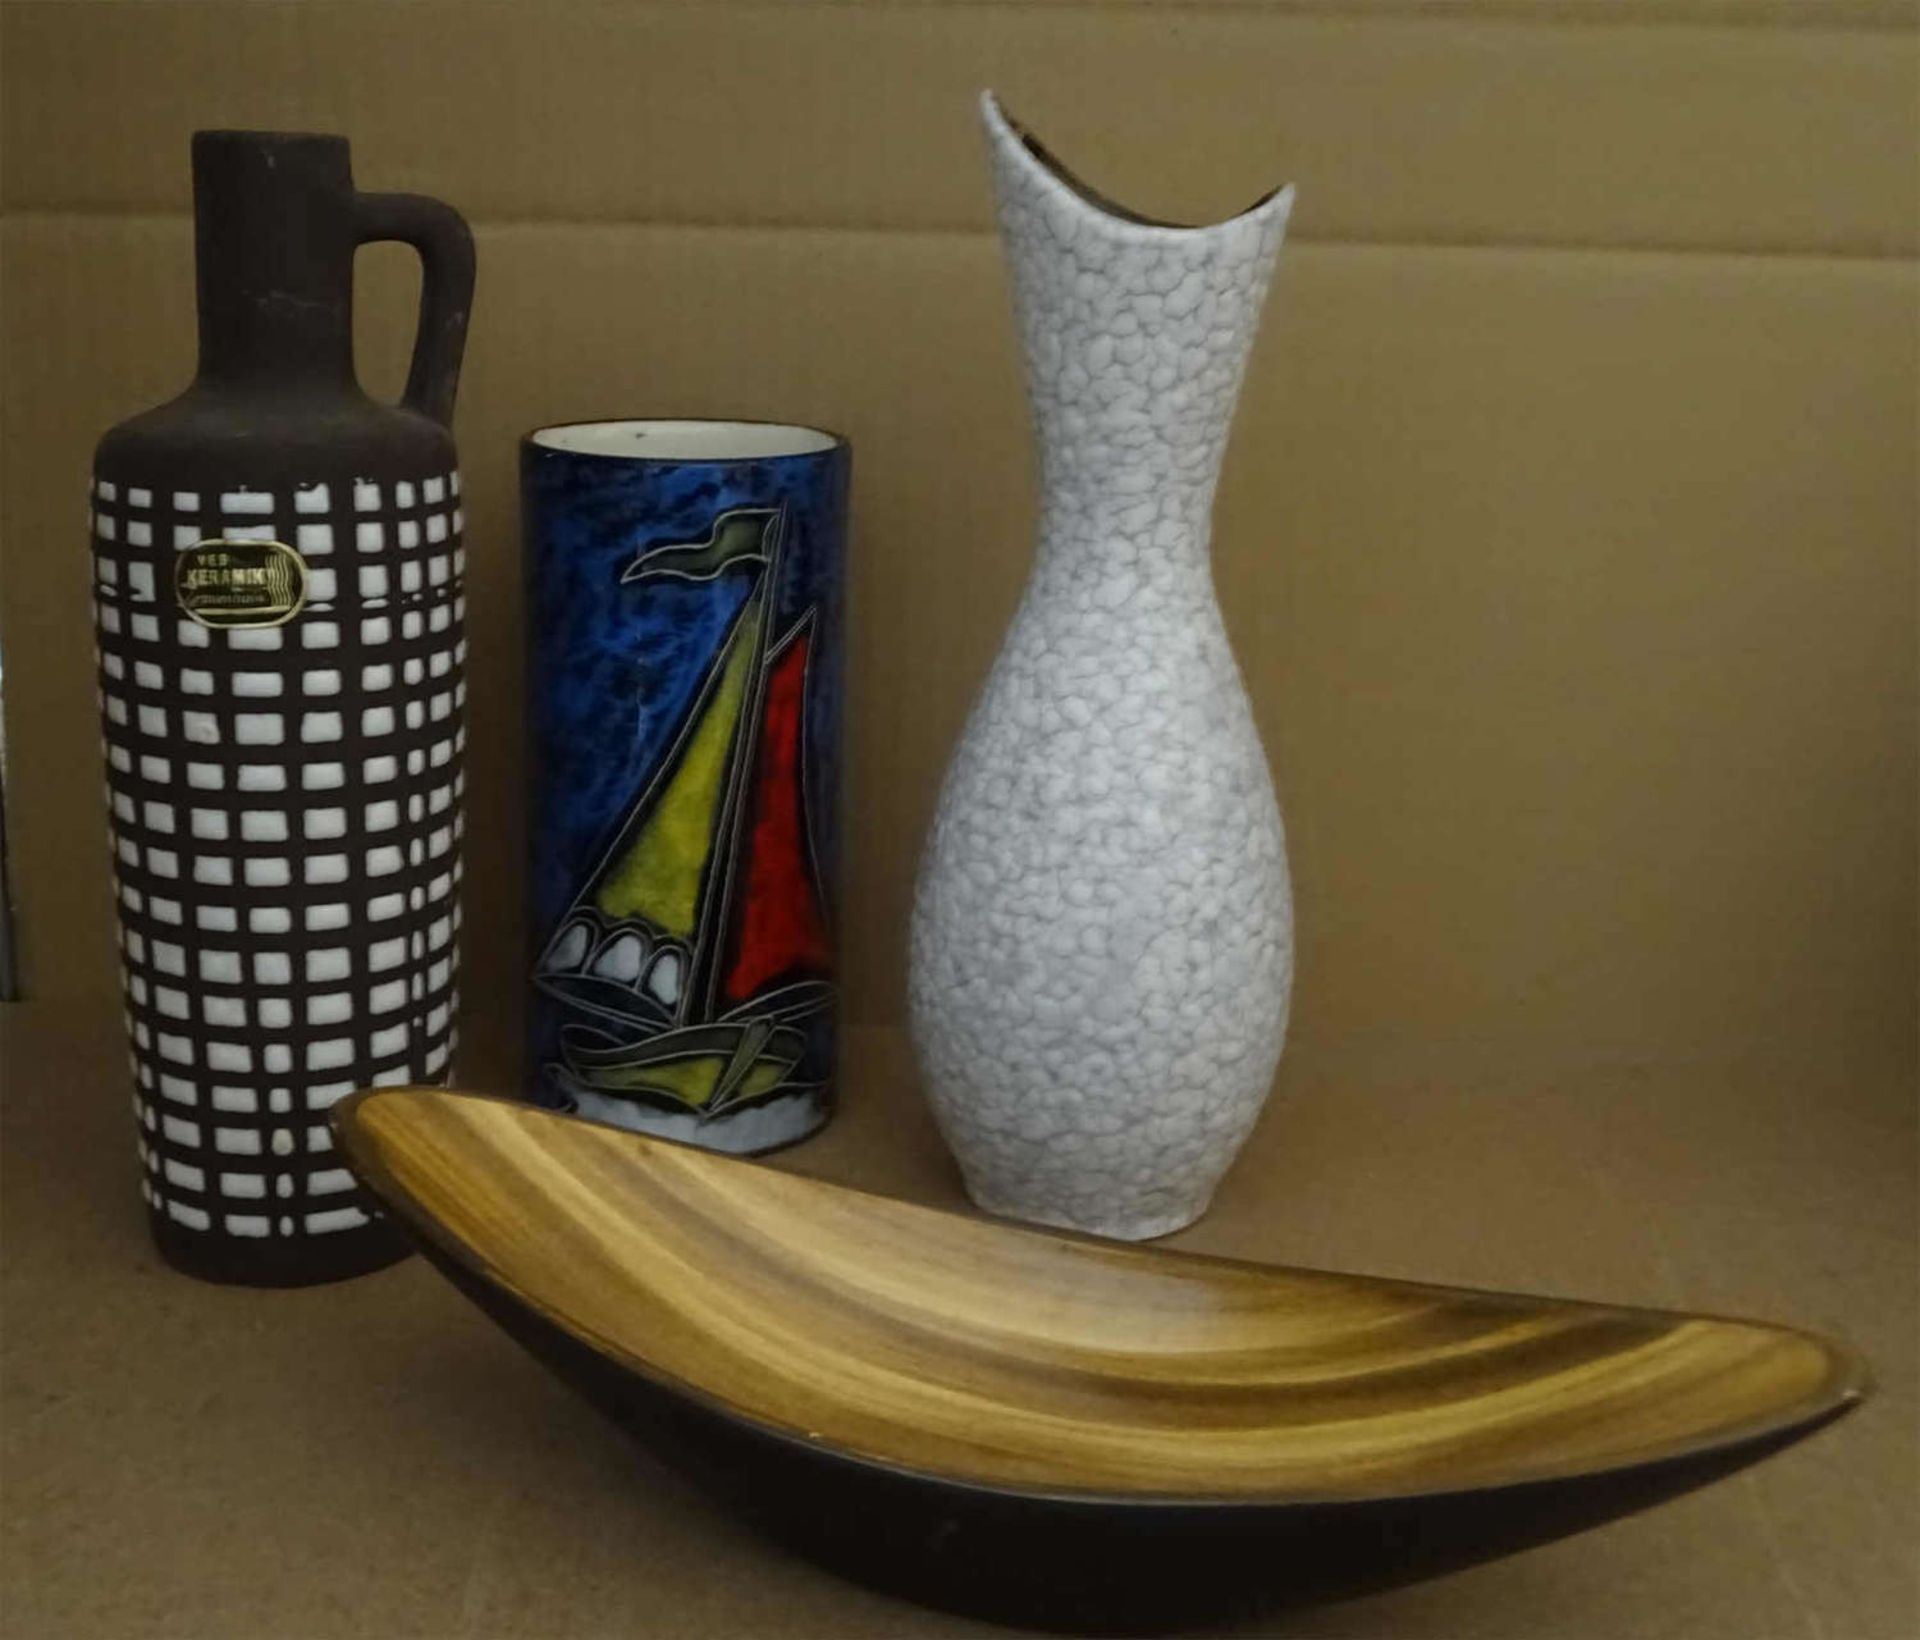 Lot 70er Jahre Keramik, bestehend aus 3 Vasen, sowie 1 Schale. Guter Zustand.Lot 70s ceramic,